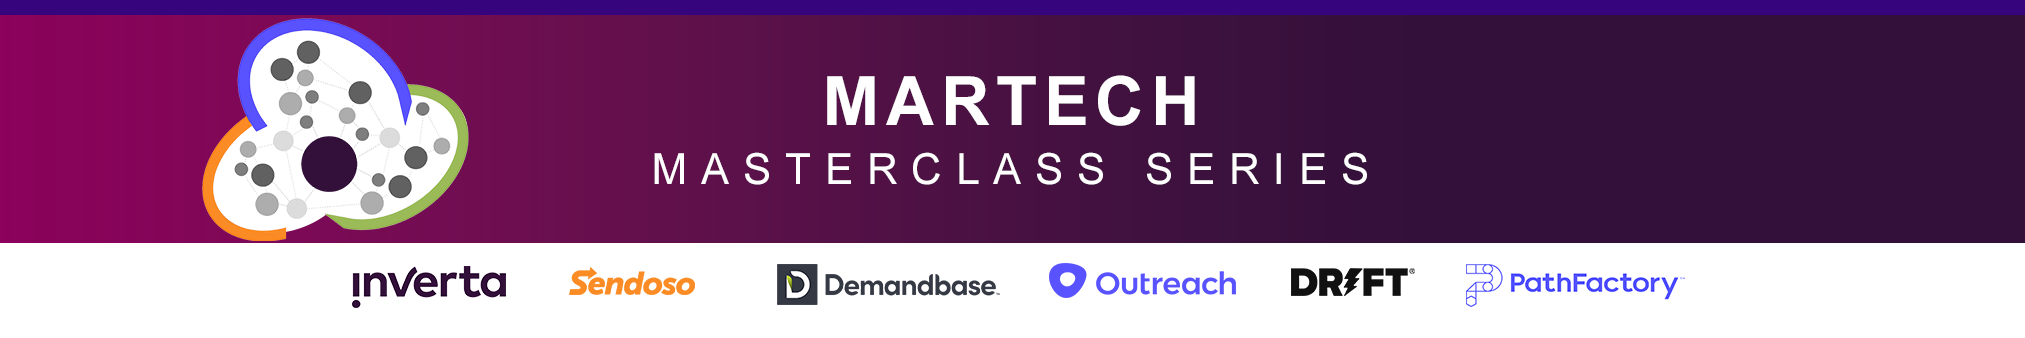 Martech Masterclass Series Header